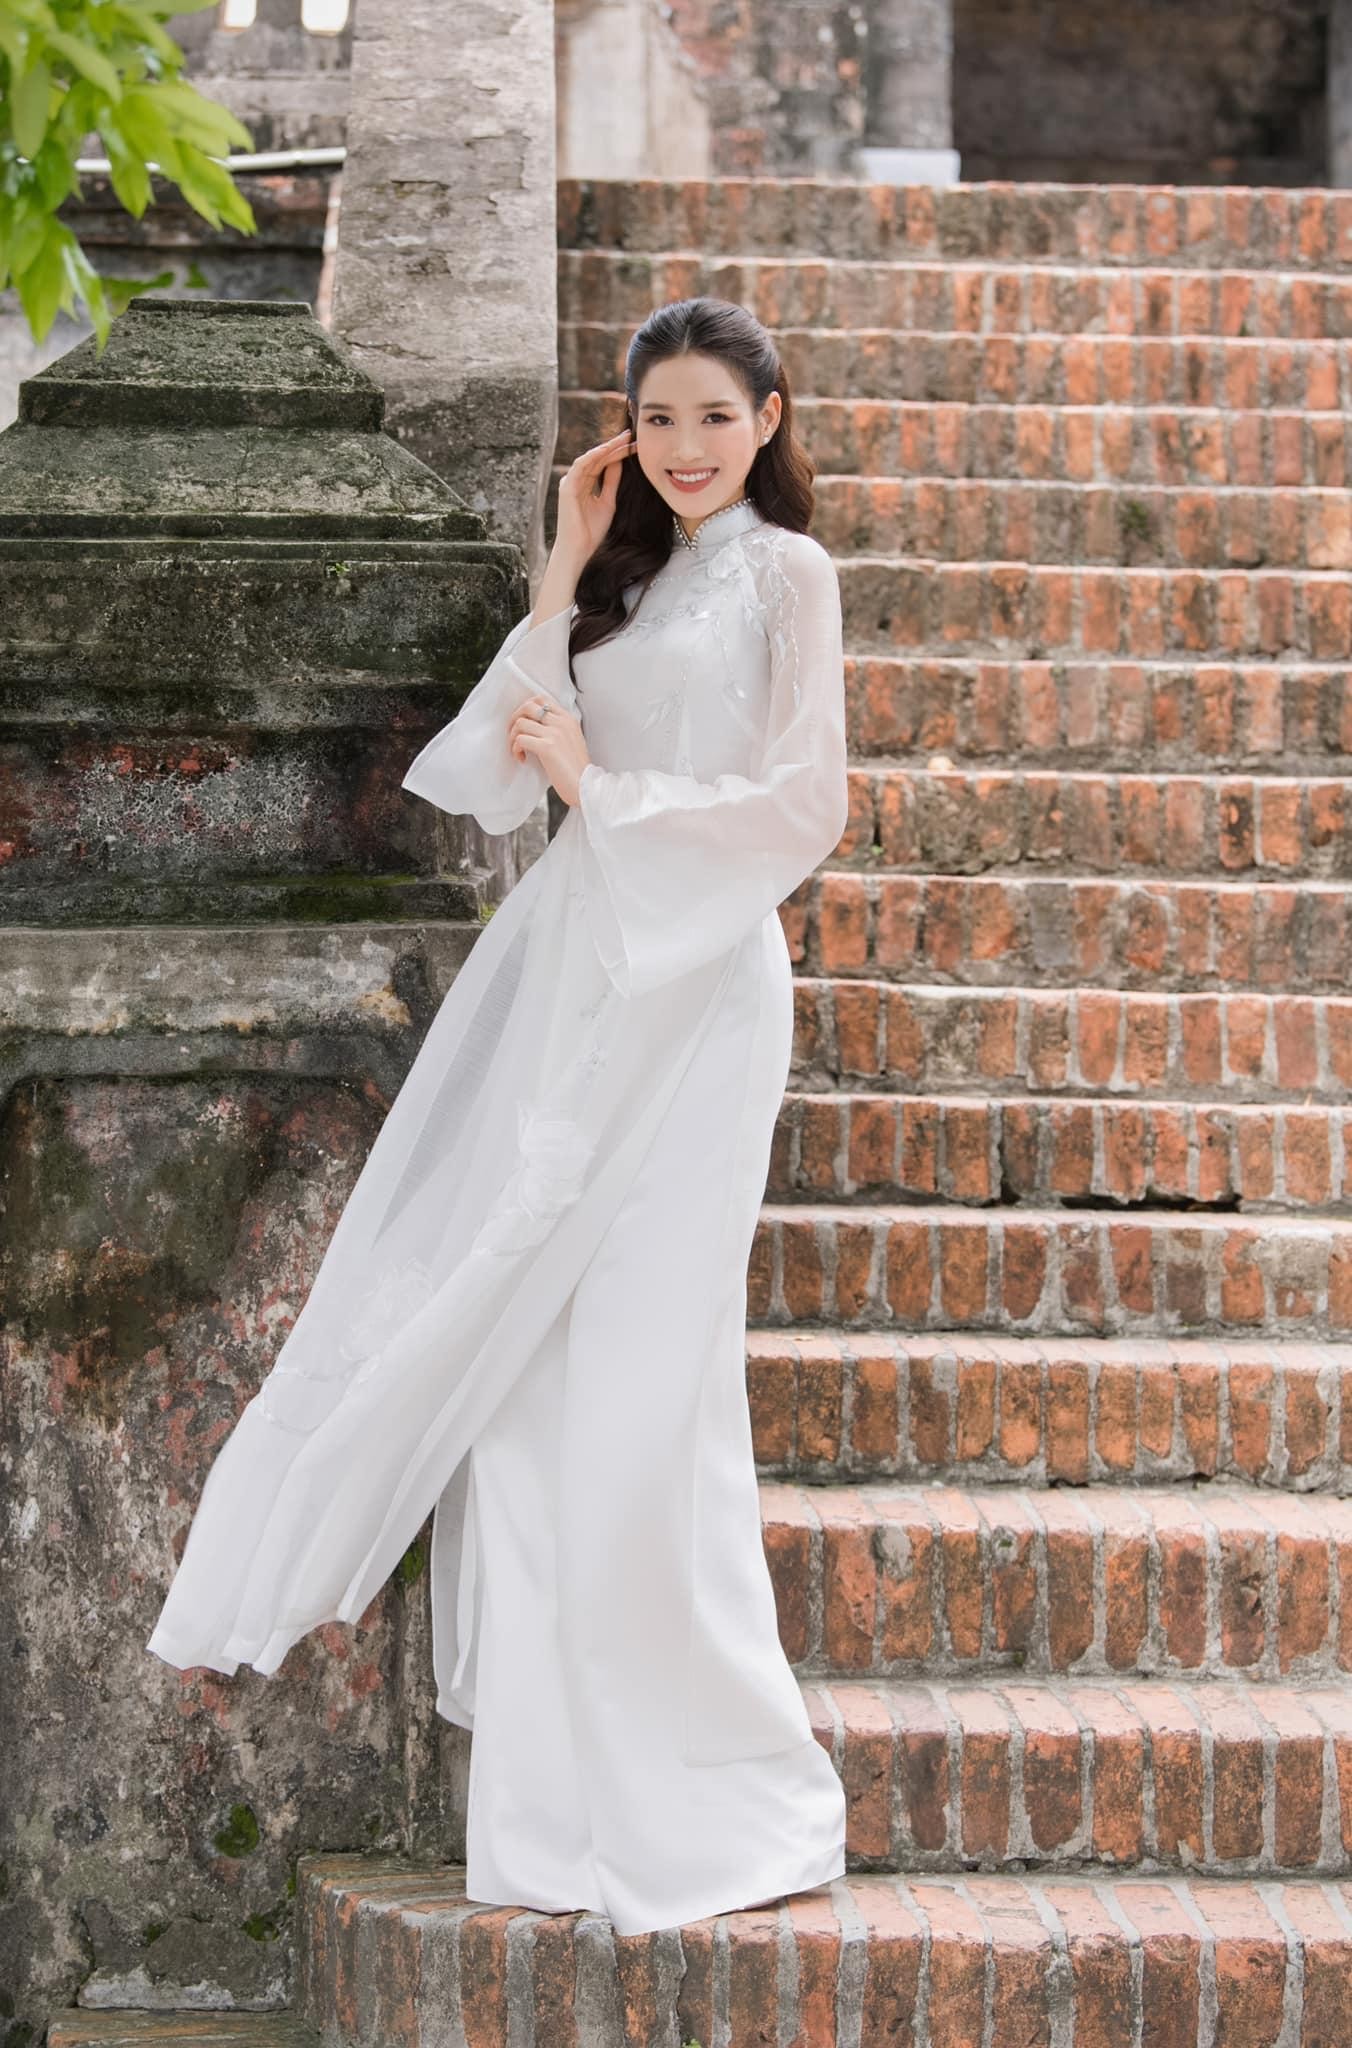 Hoa hậu Đỗ Thị Hà đẹp thuần khiết với áo dài trắng - Ảnh 4.